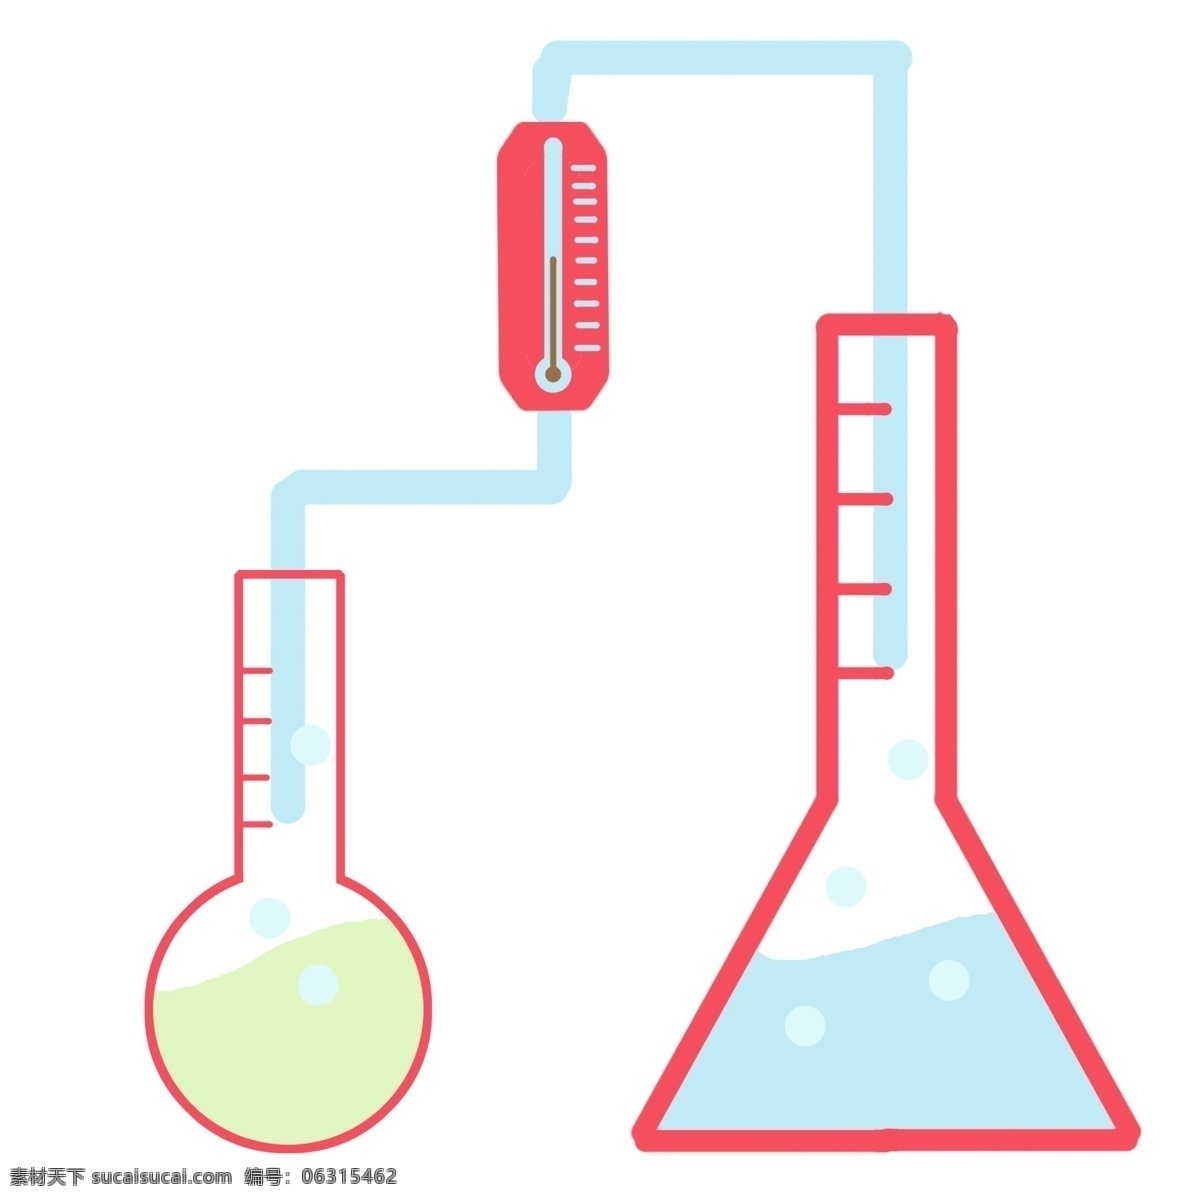 化学 漏斗 卡通 插画 化学的漏斗 卡通插画 化学插画 化学仪器 化学用品 化学学科 量瓶的插画